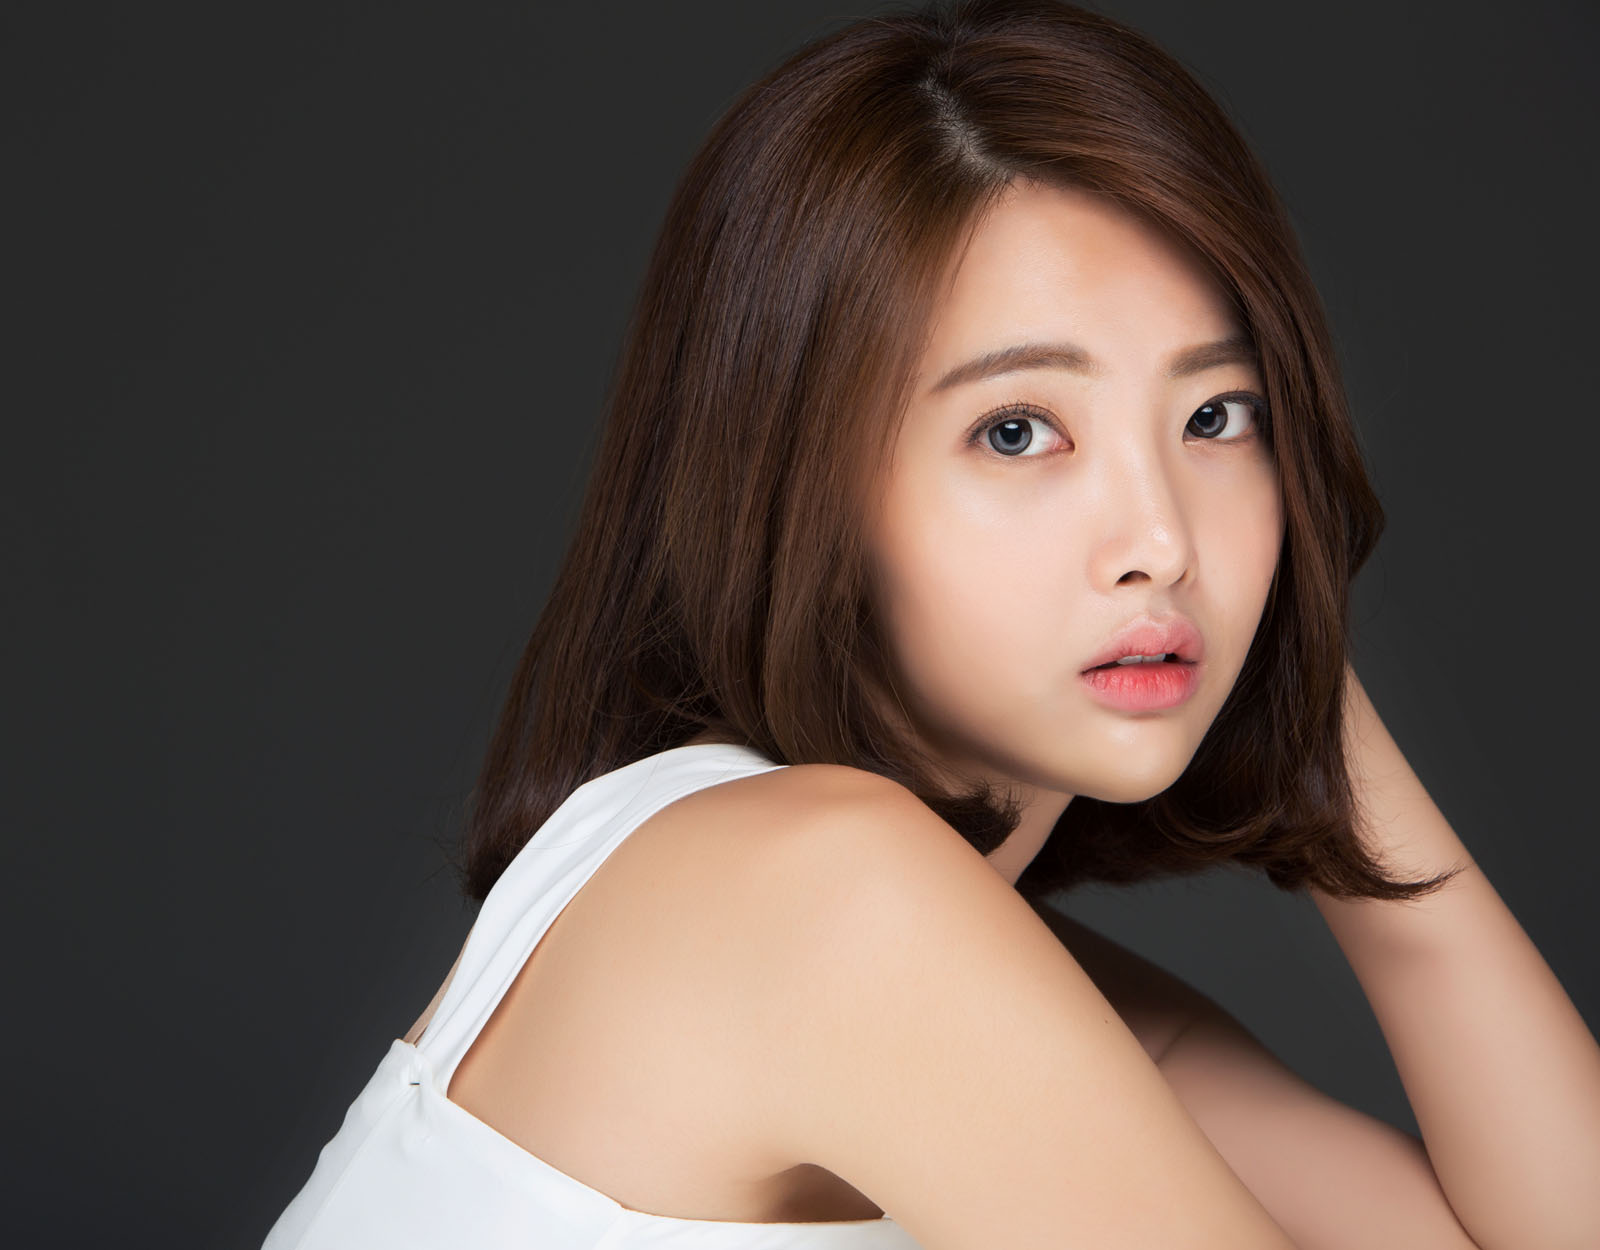 88+] Korean Actress Wallpapers - WallpaperSafari